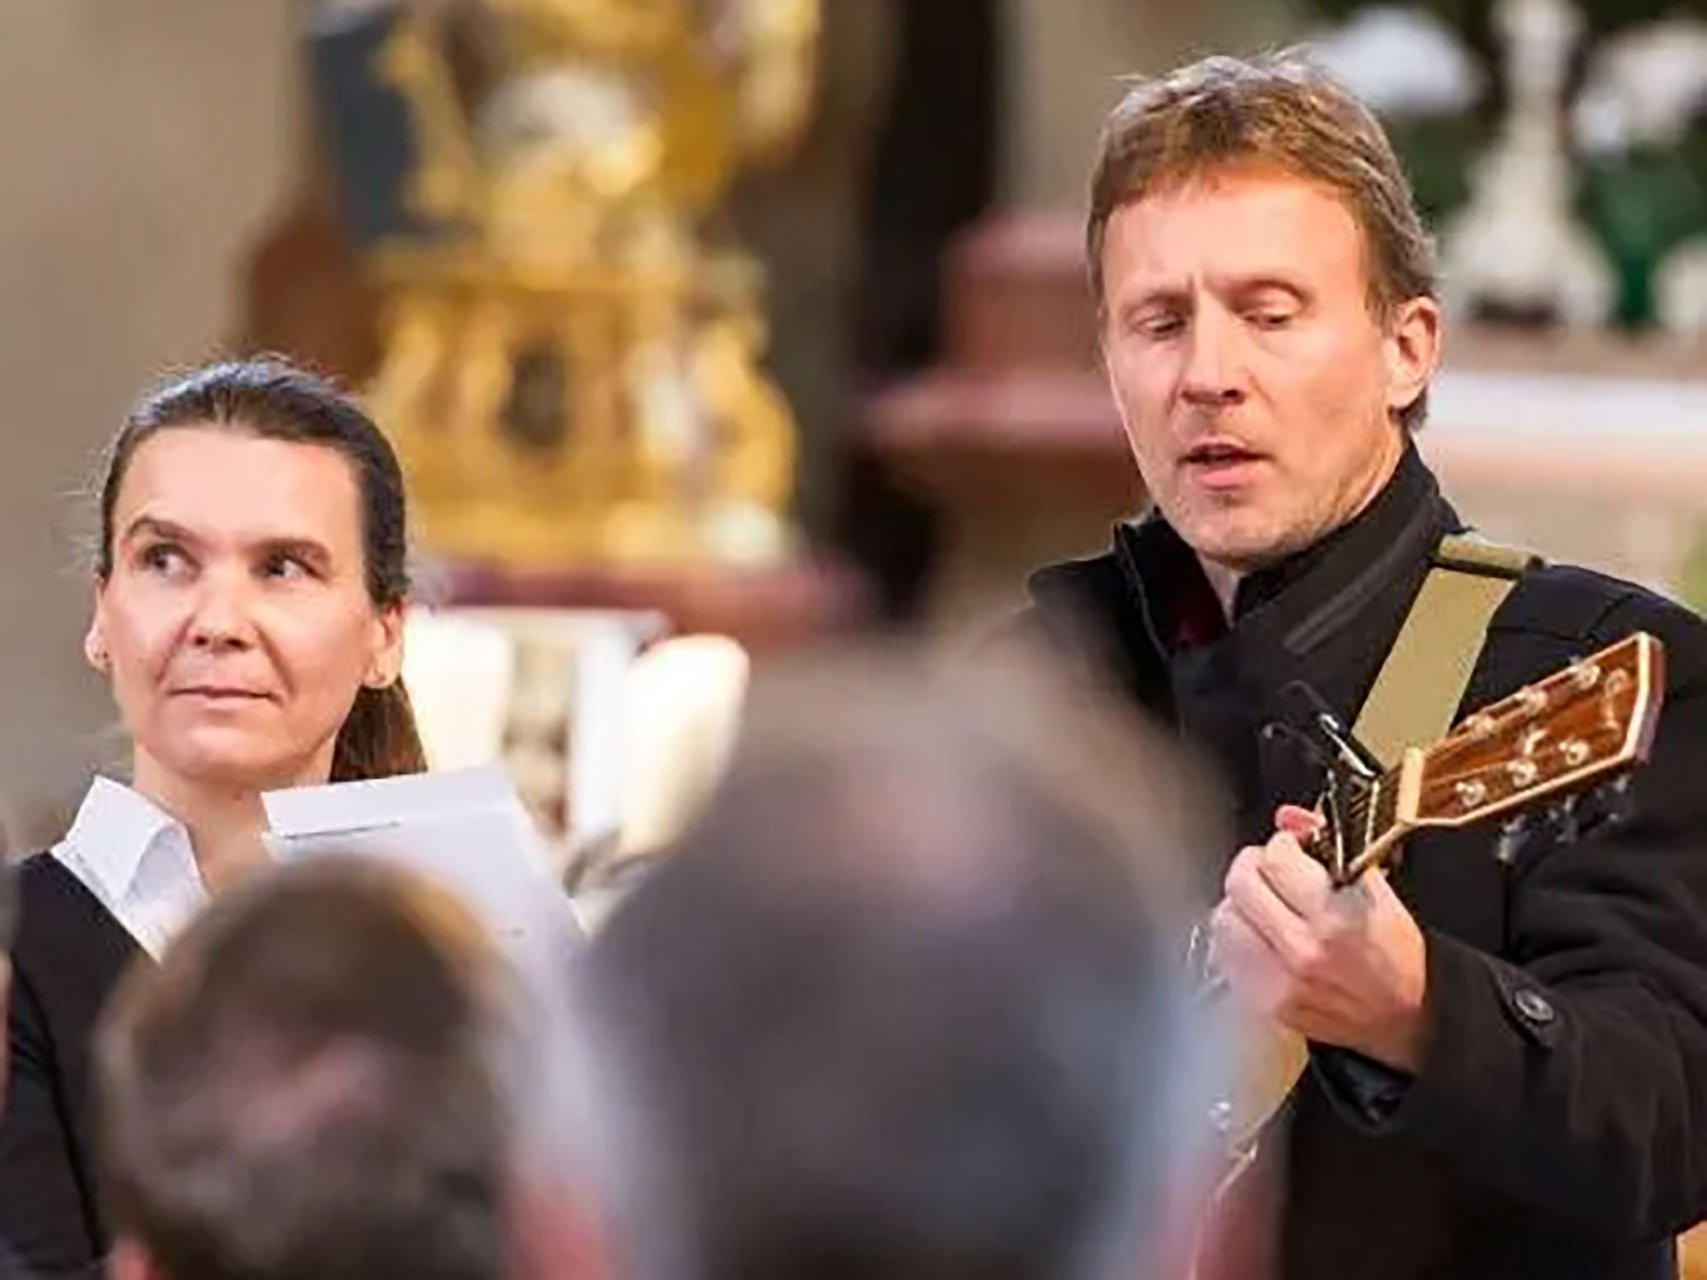 Musizieren in der Kirche - Nahaufnahme eines Mannes mit Gitarre